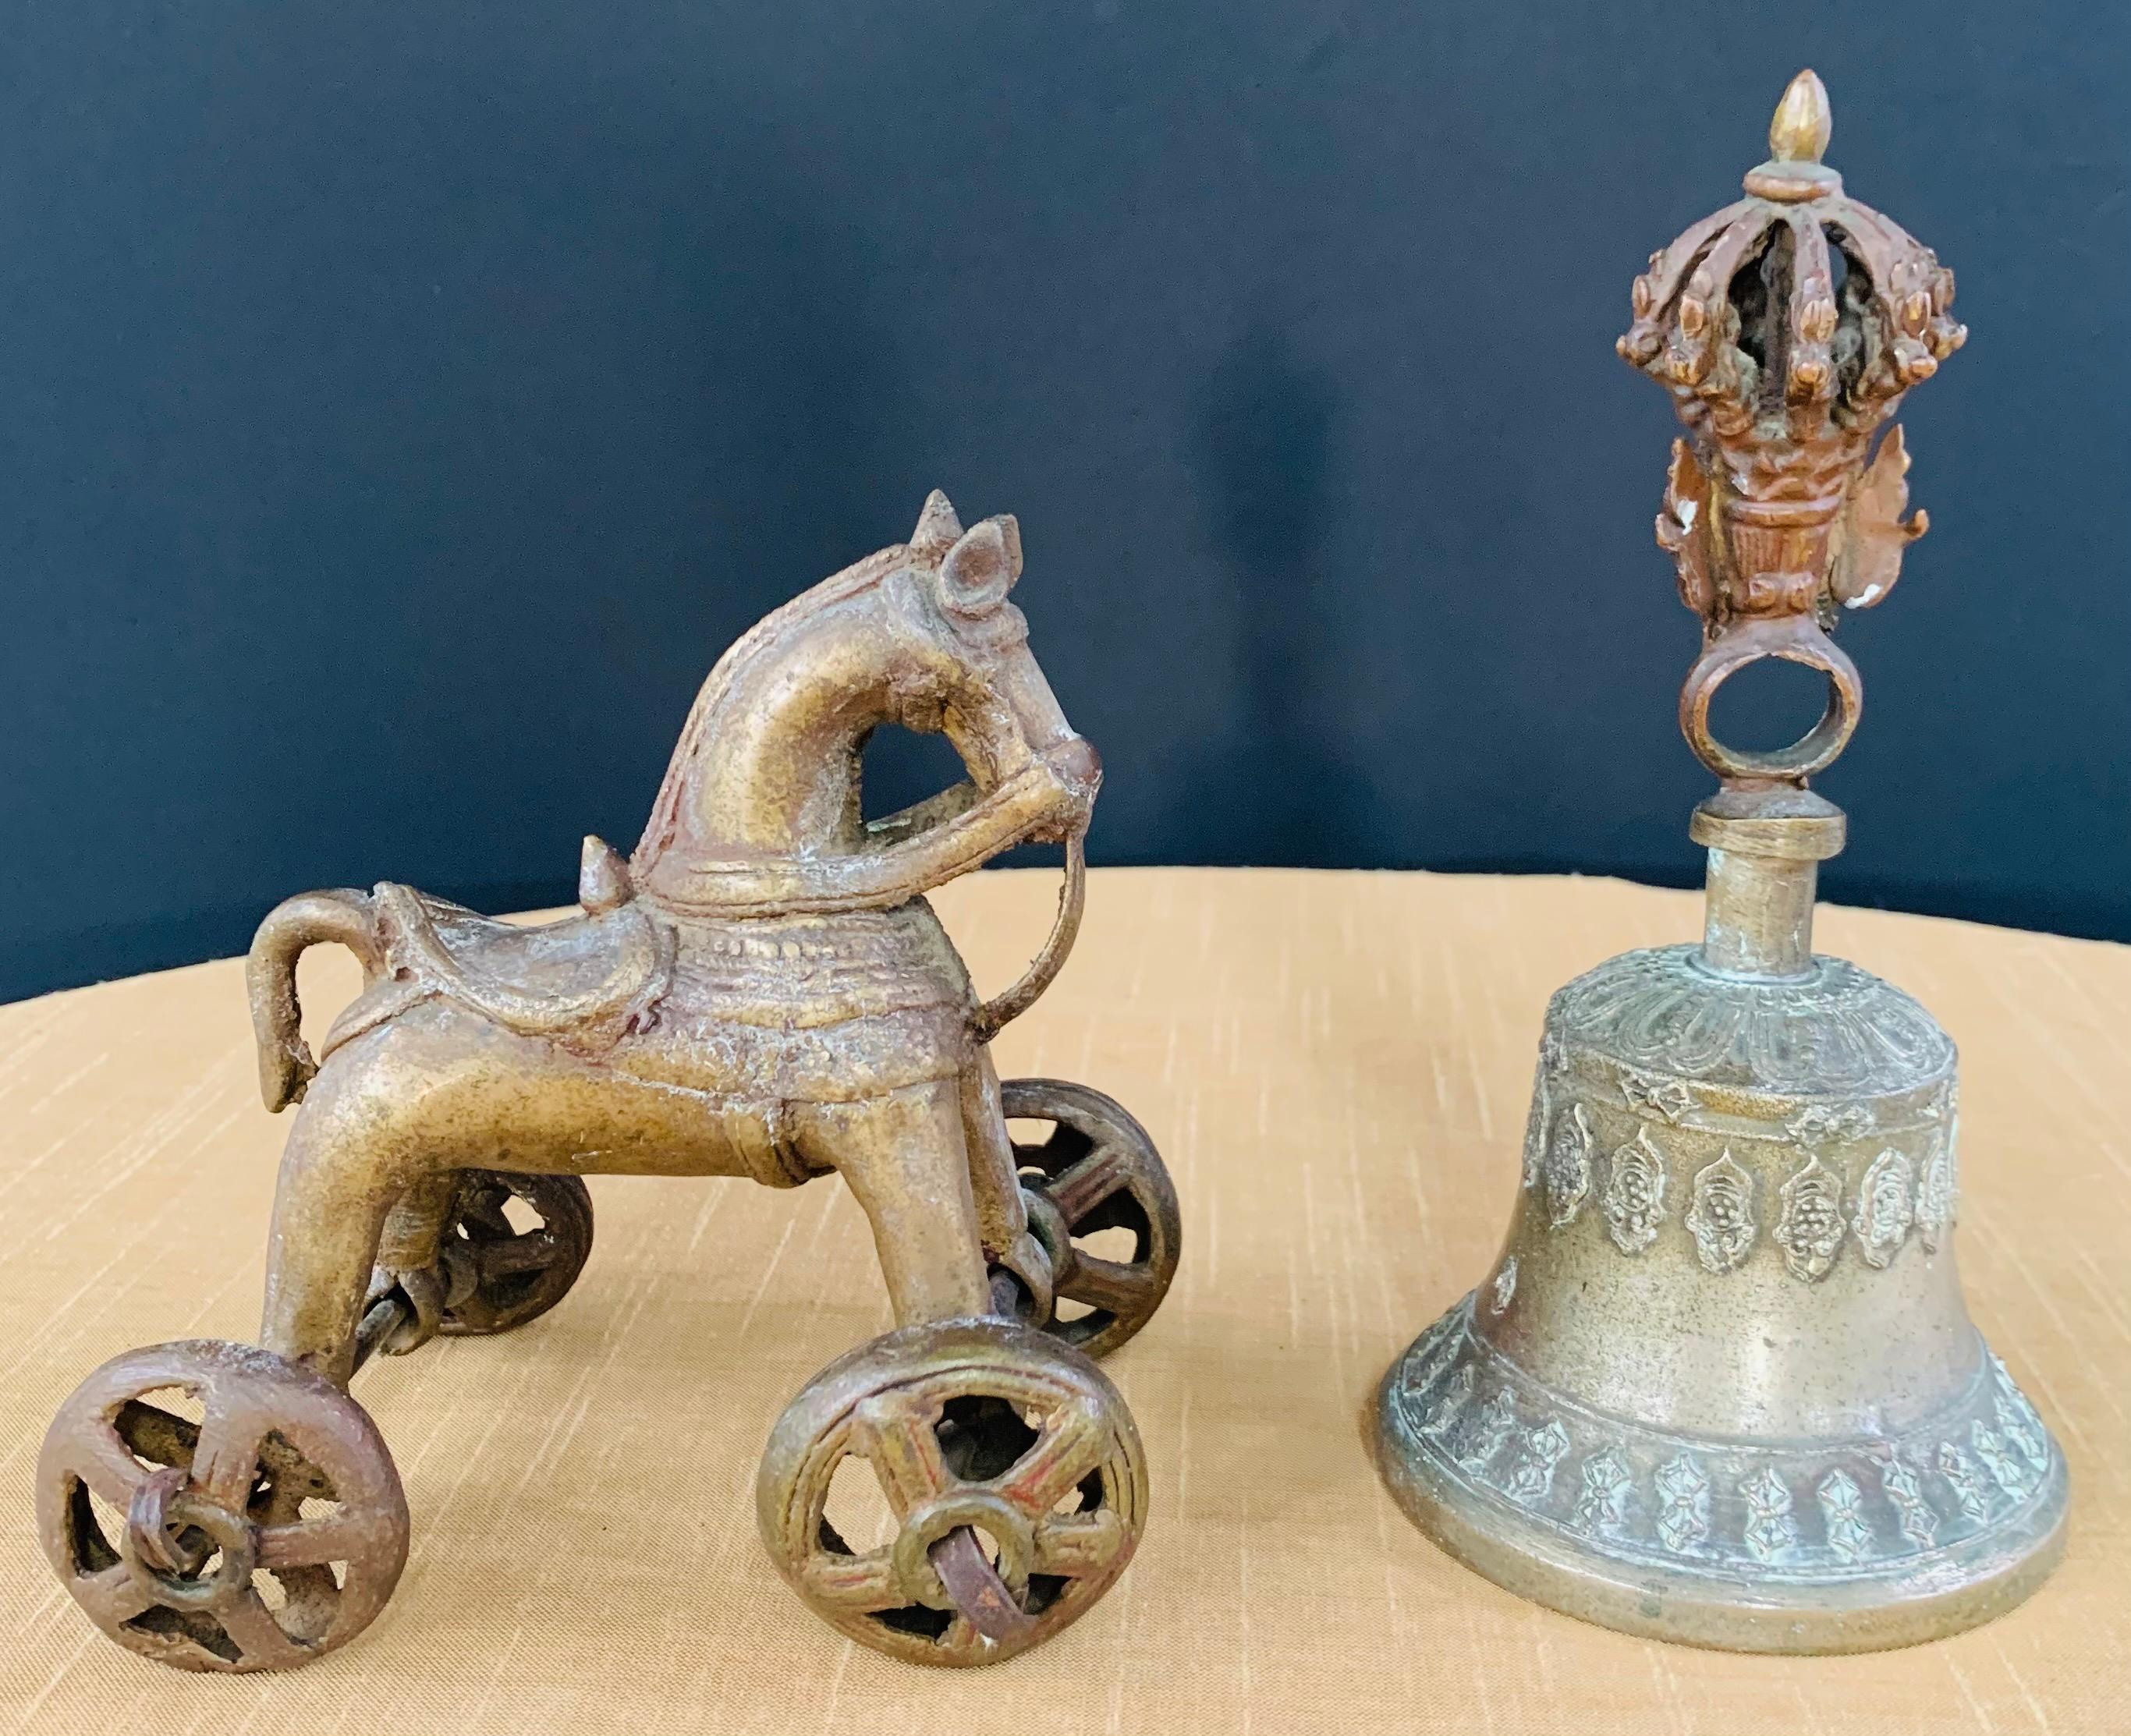 Antique voiture asiatique cheval en bronze sur 4 roues et une cloche avec des figures bouddhistes tibétaines. Les deux pièces présentent une patine en surface. 

Dimensions :
Cloche : 7,5